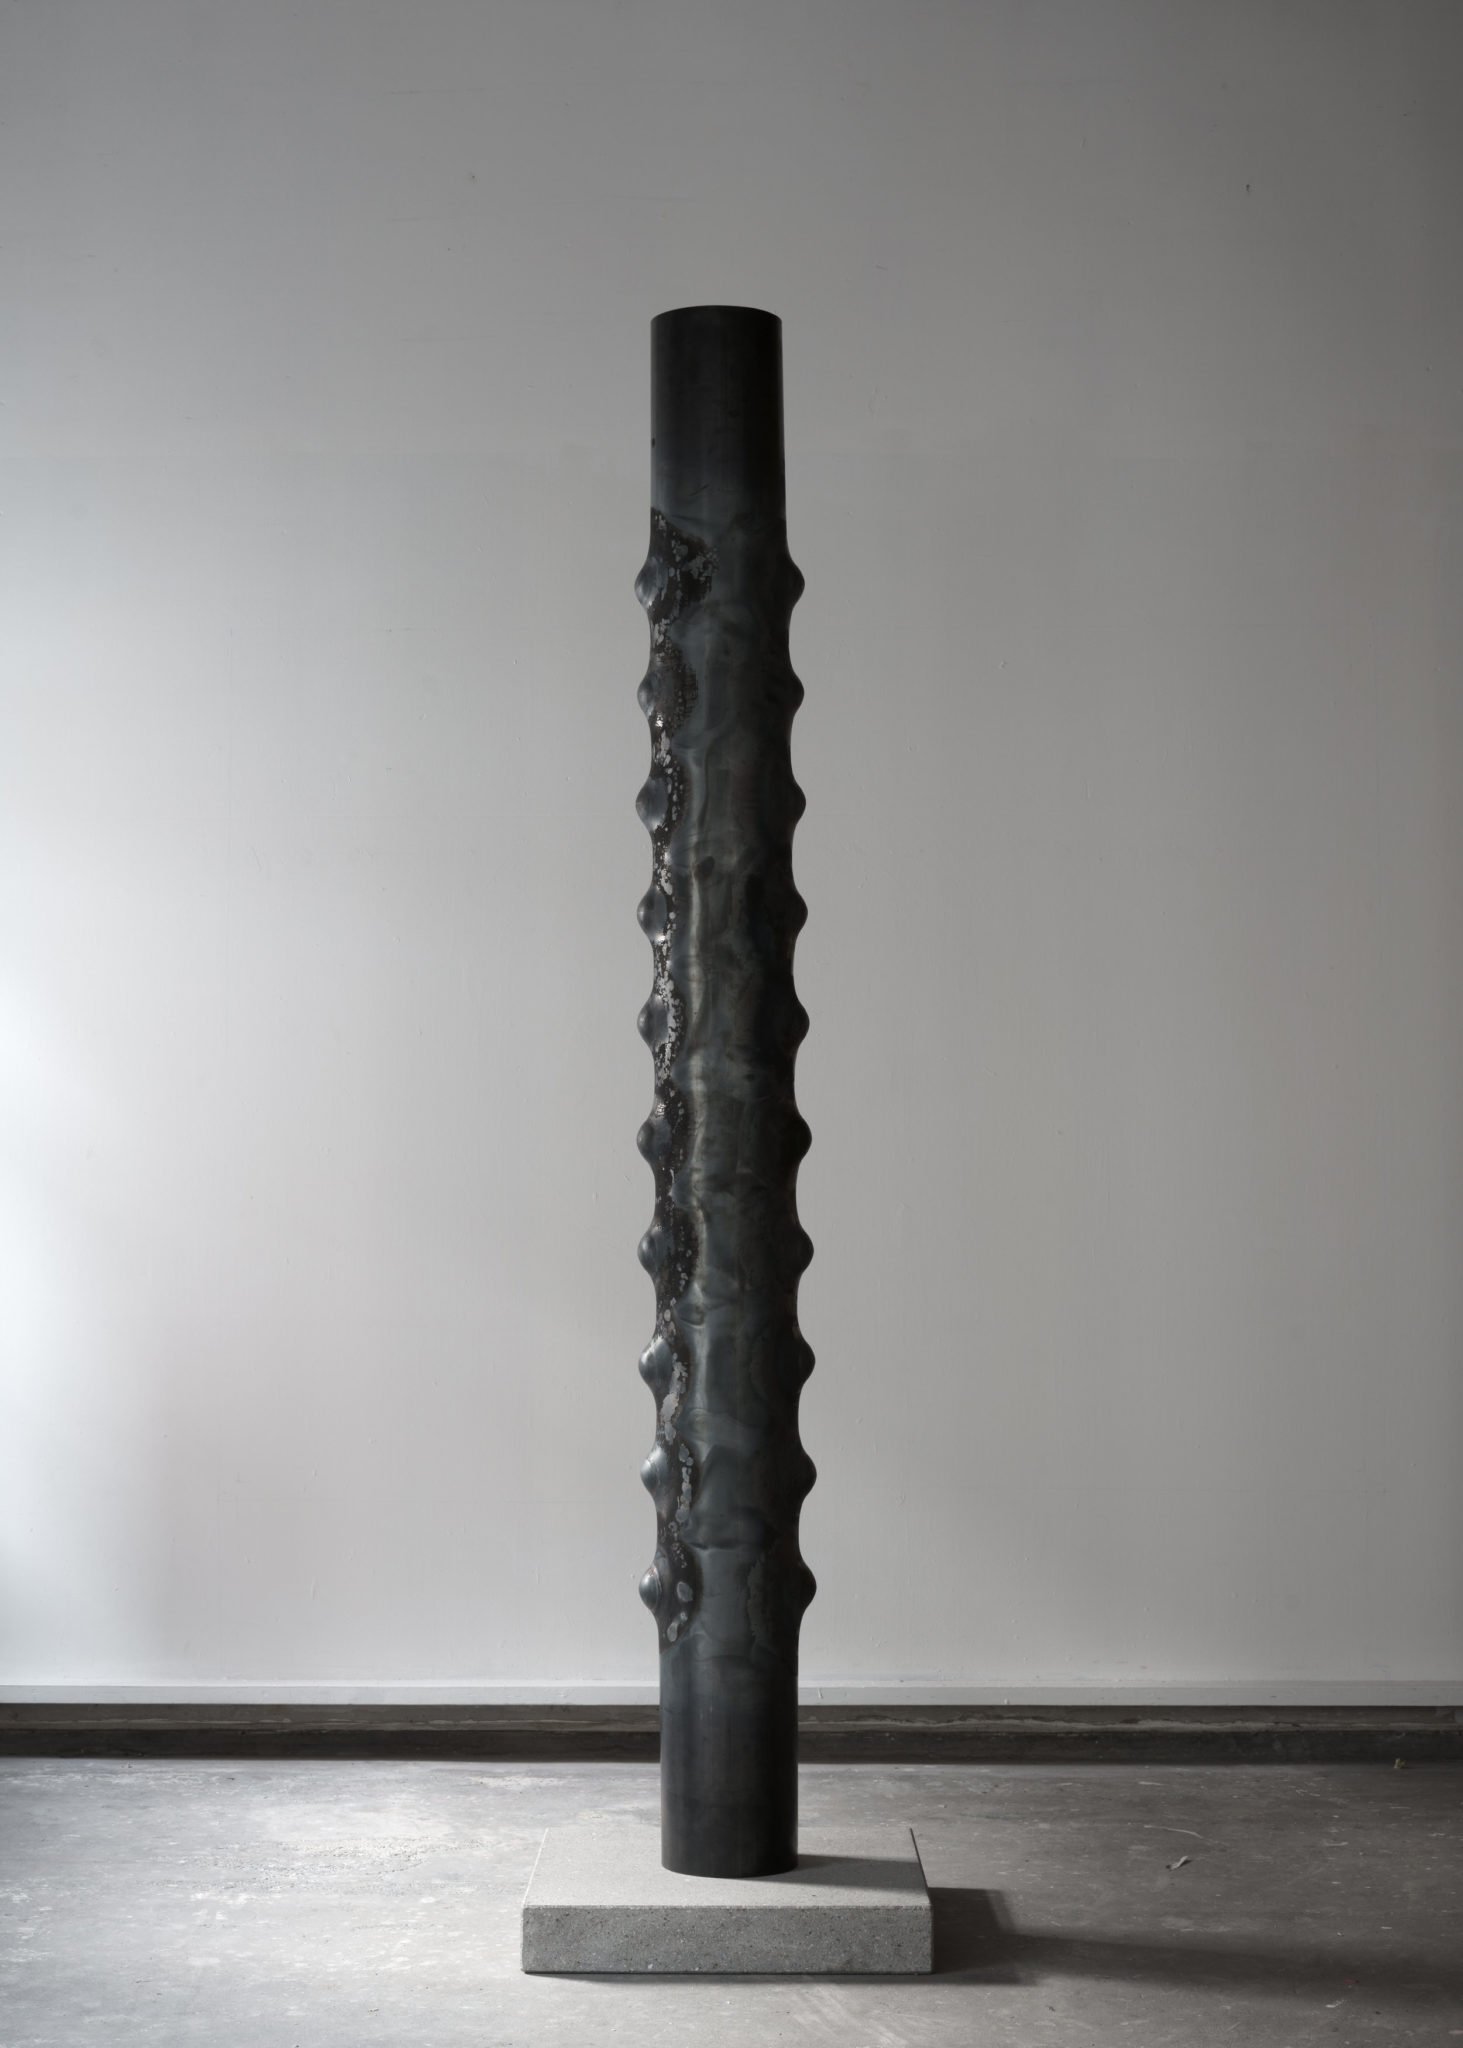 Danish designer and metalworker Jakob Joergensen's Totem